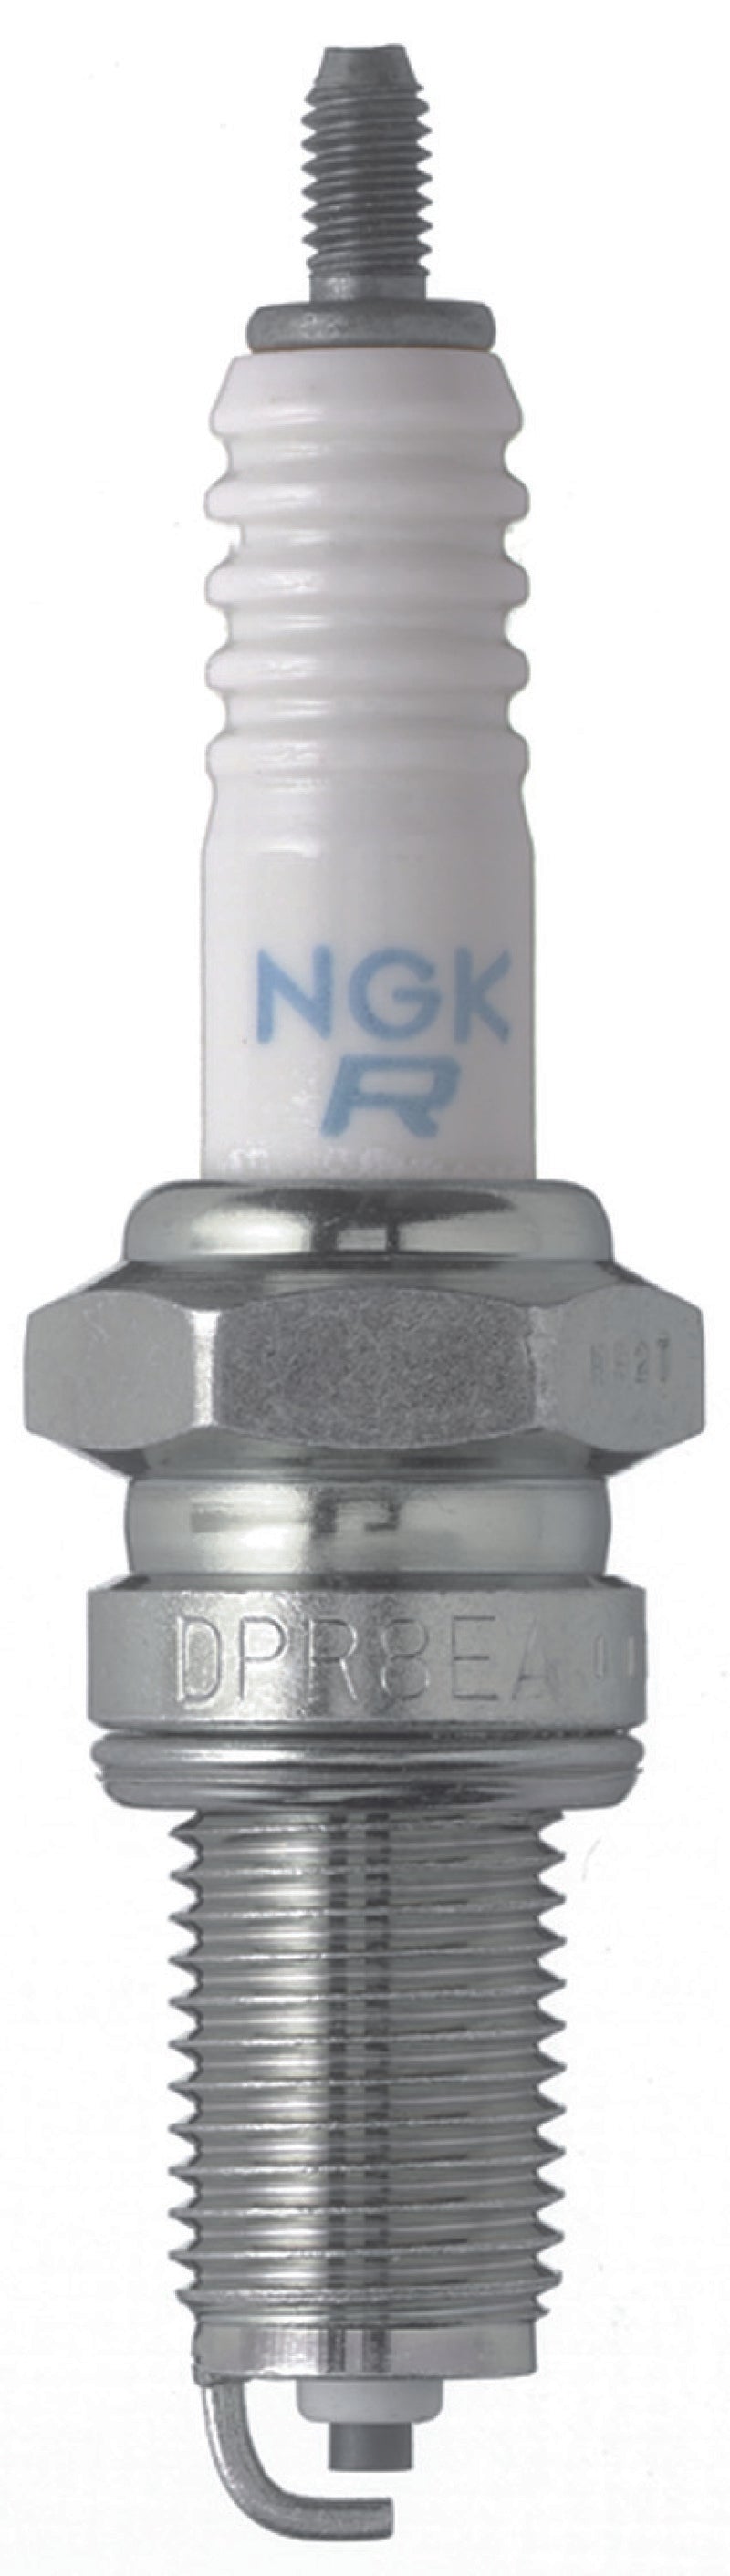 NGK Standard Spark Plug Box of 10 (DPR6EA-9)